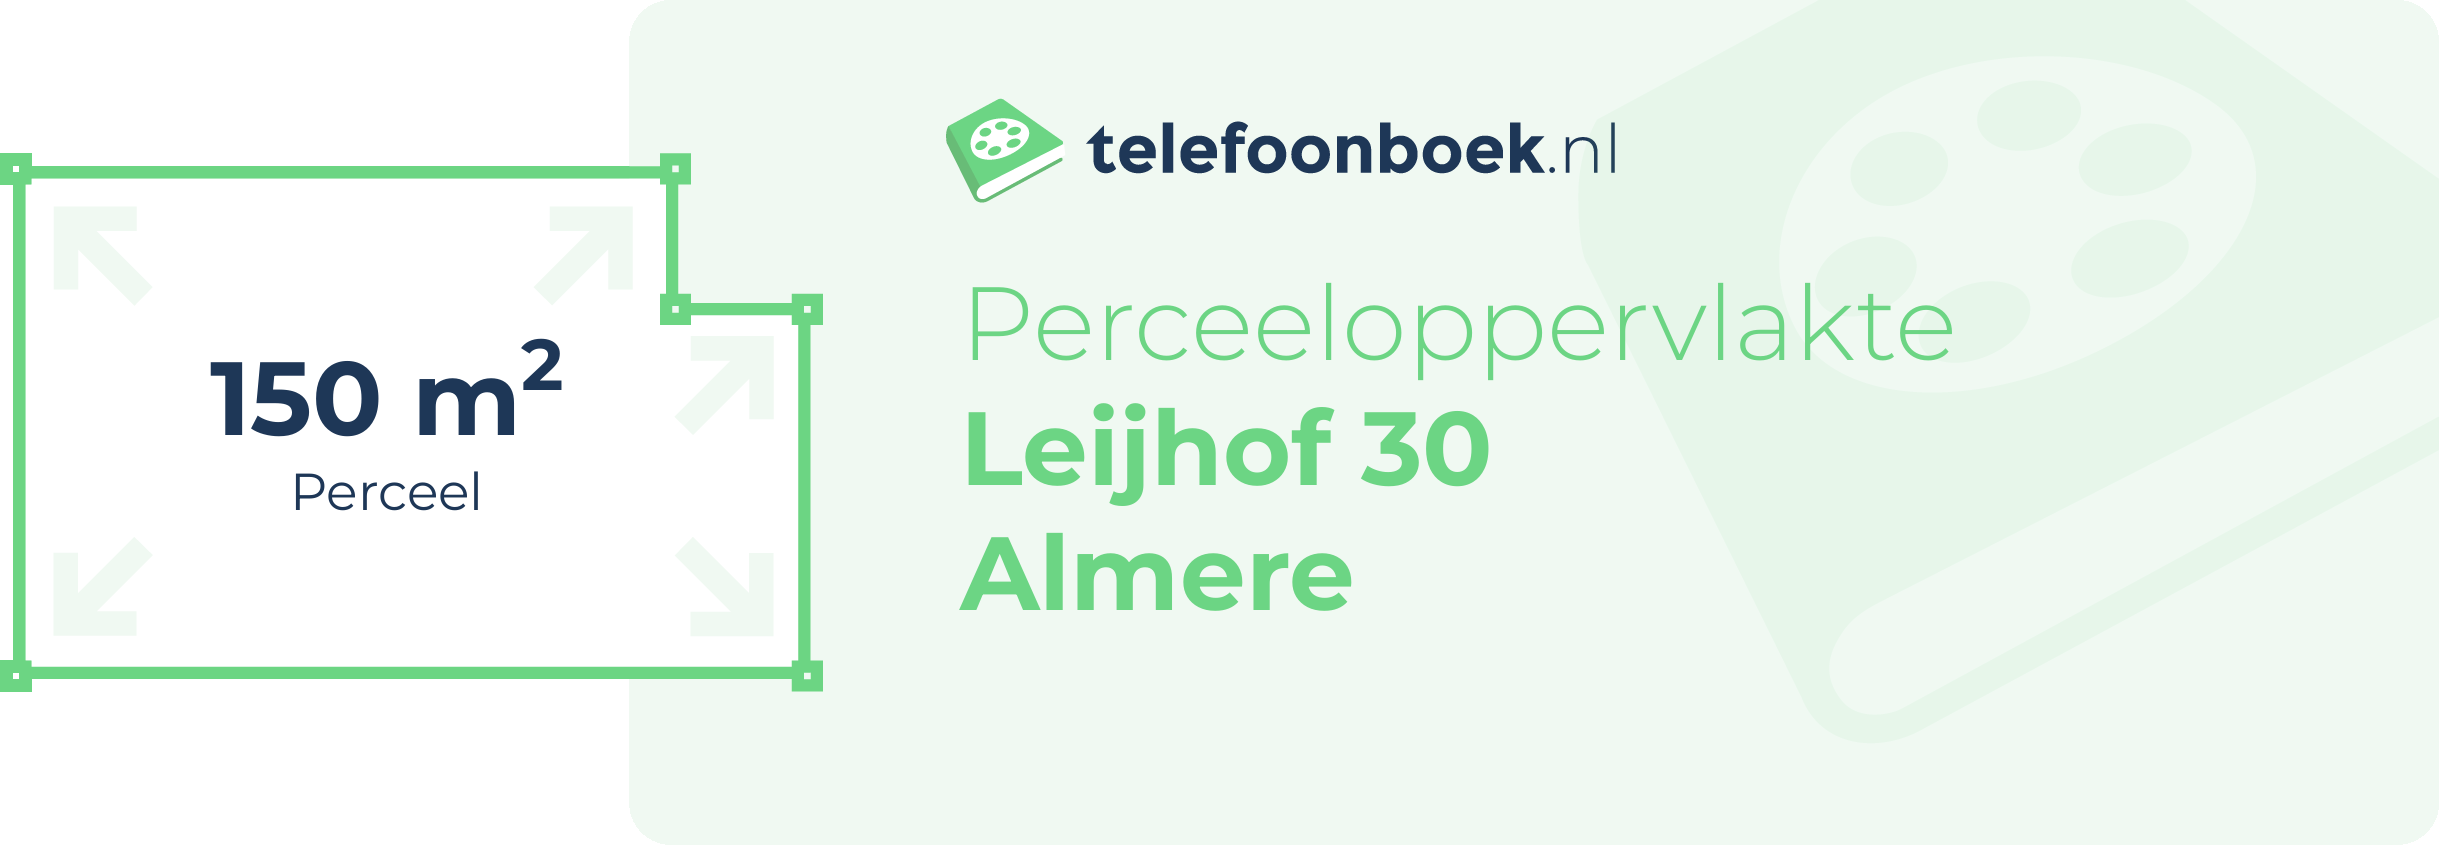 Perceeloppervlakte Leijhof 30 Almere